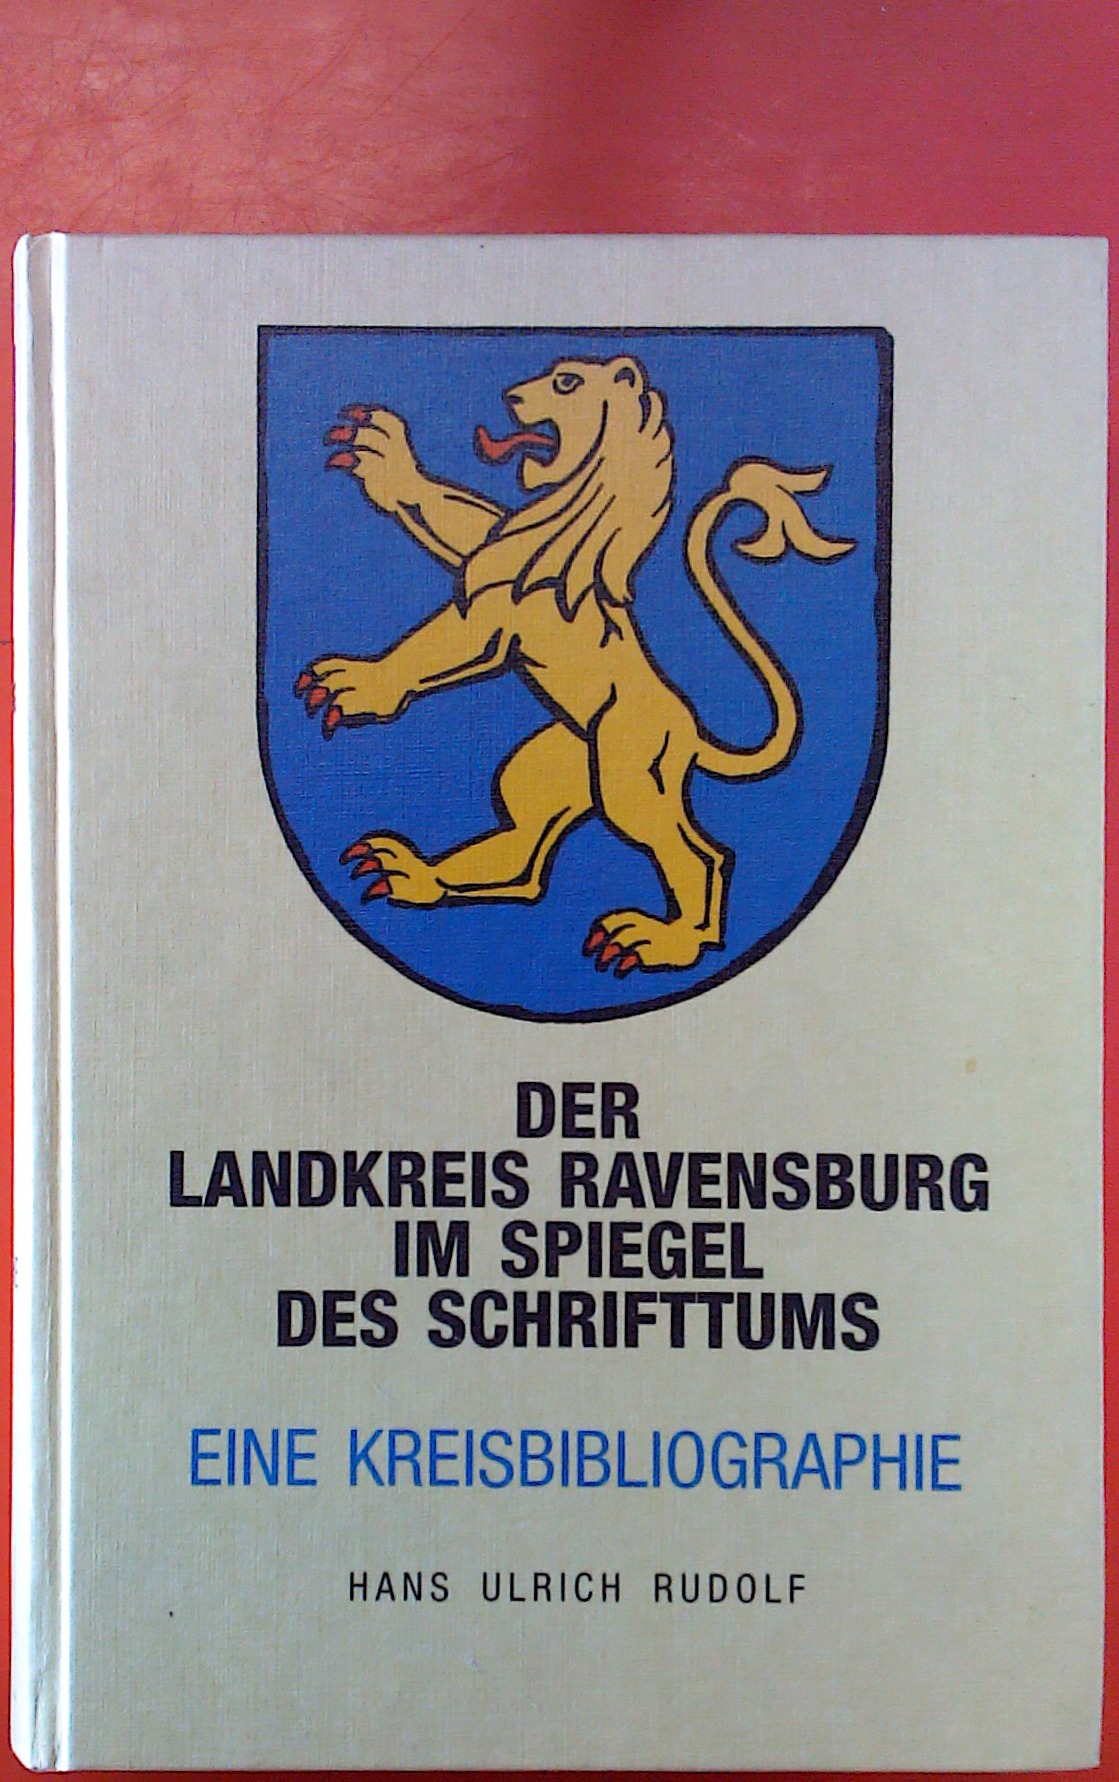 Der Landkreis Ravensburg im Spiegel des Schrifttums - Eine Kreisbibliographie. Weingartener Hochschulschriften Nr. 10. - Hrsg: Hans Ulrich Rudolf